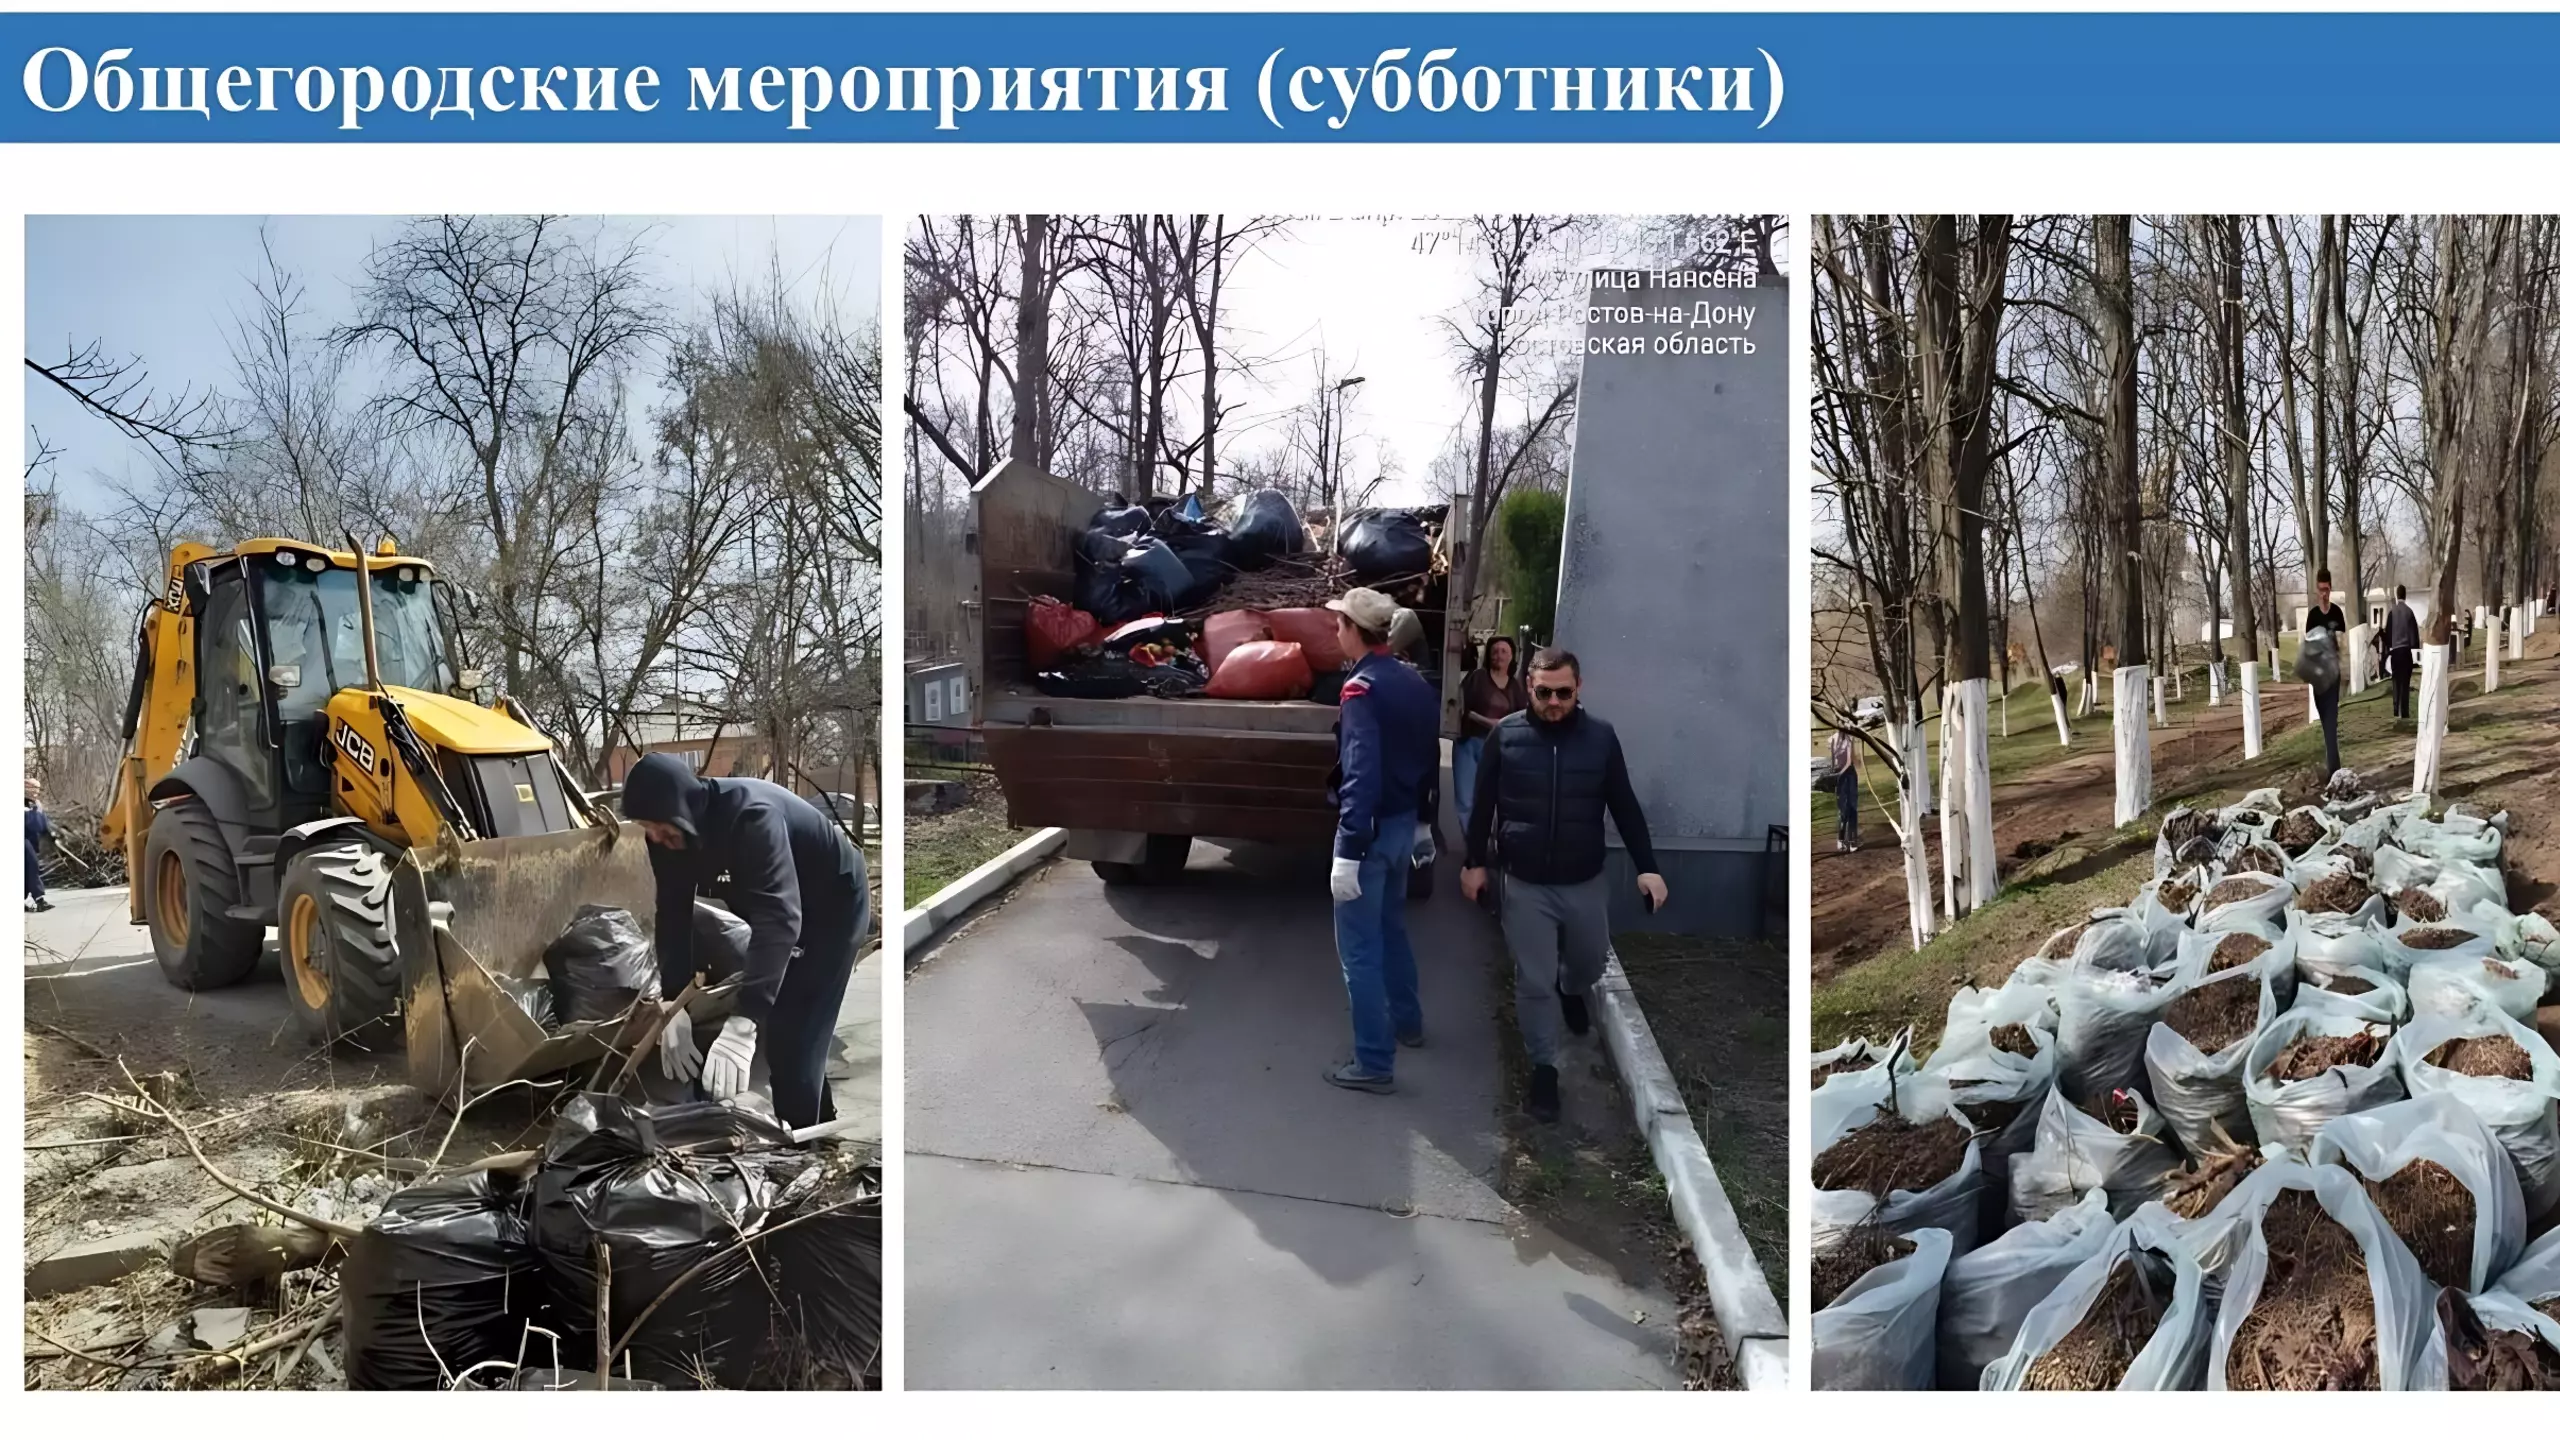 Генподрядчика по уборке улиц Ростова заподозрили в махинациях на 4 млн